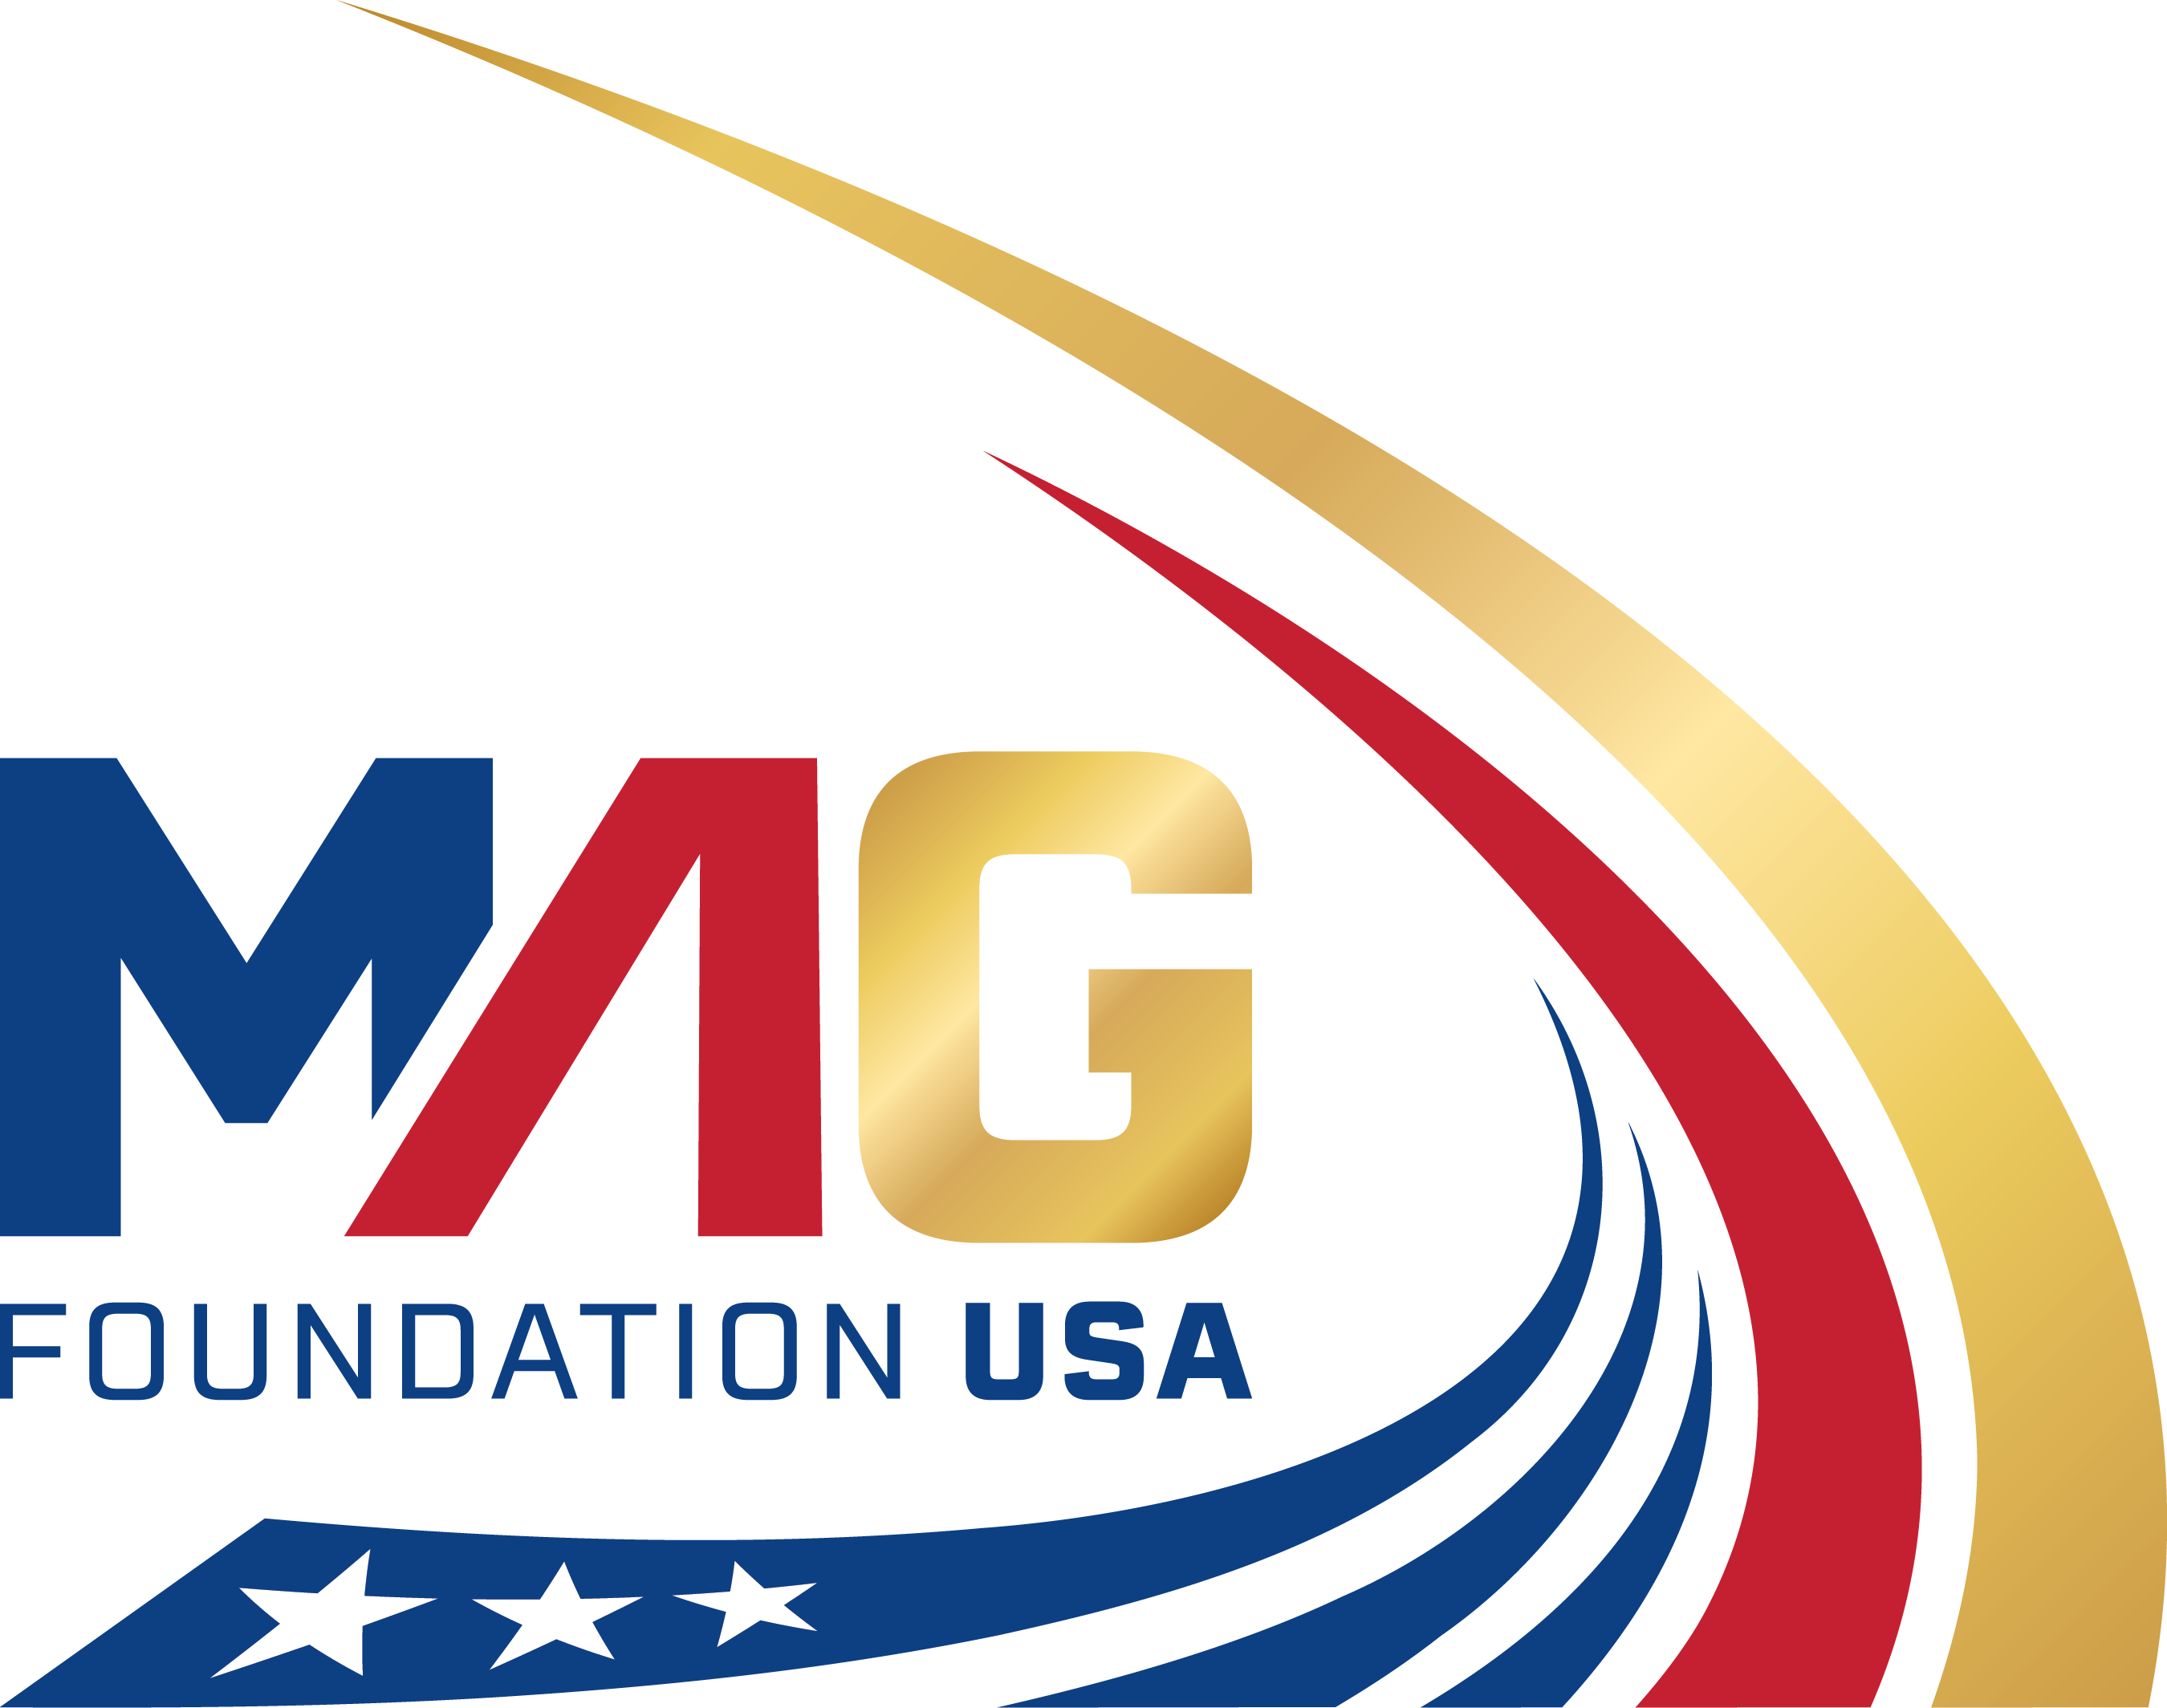 MAG Foundation USA logo